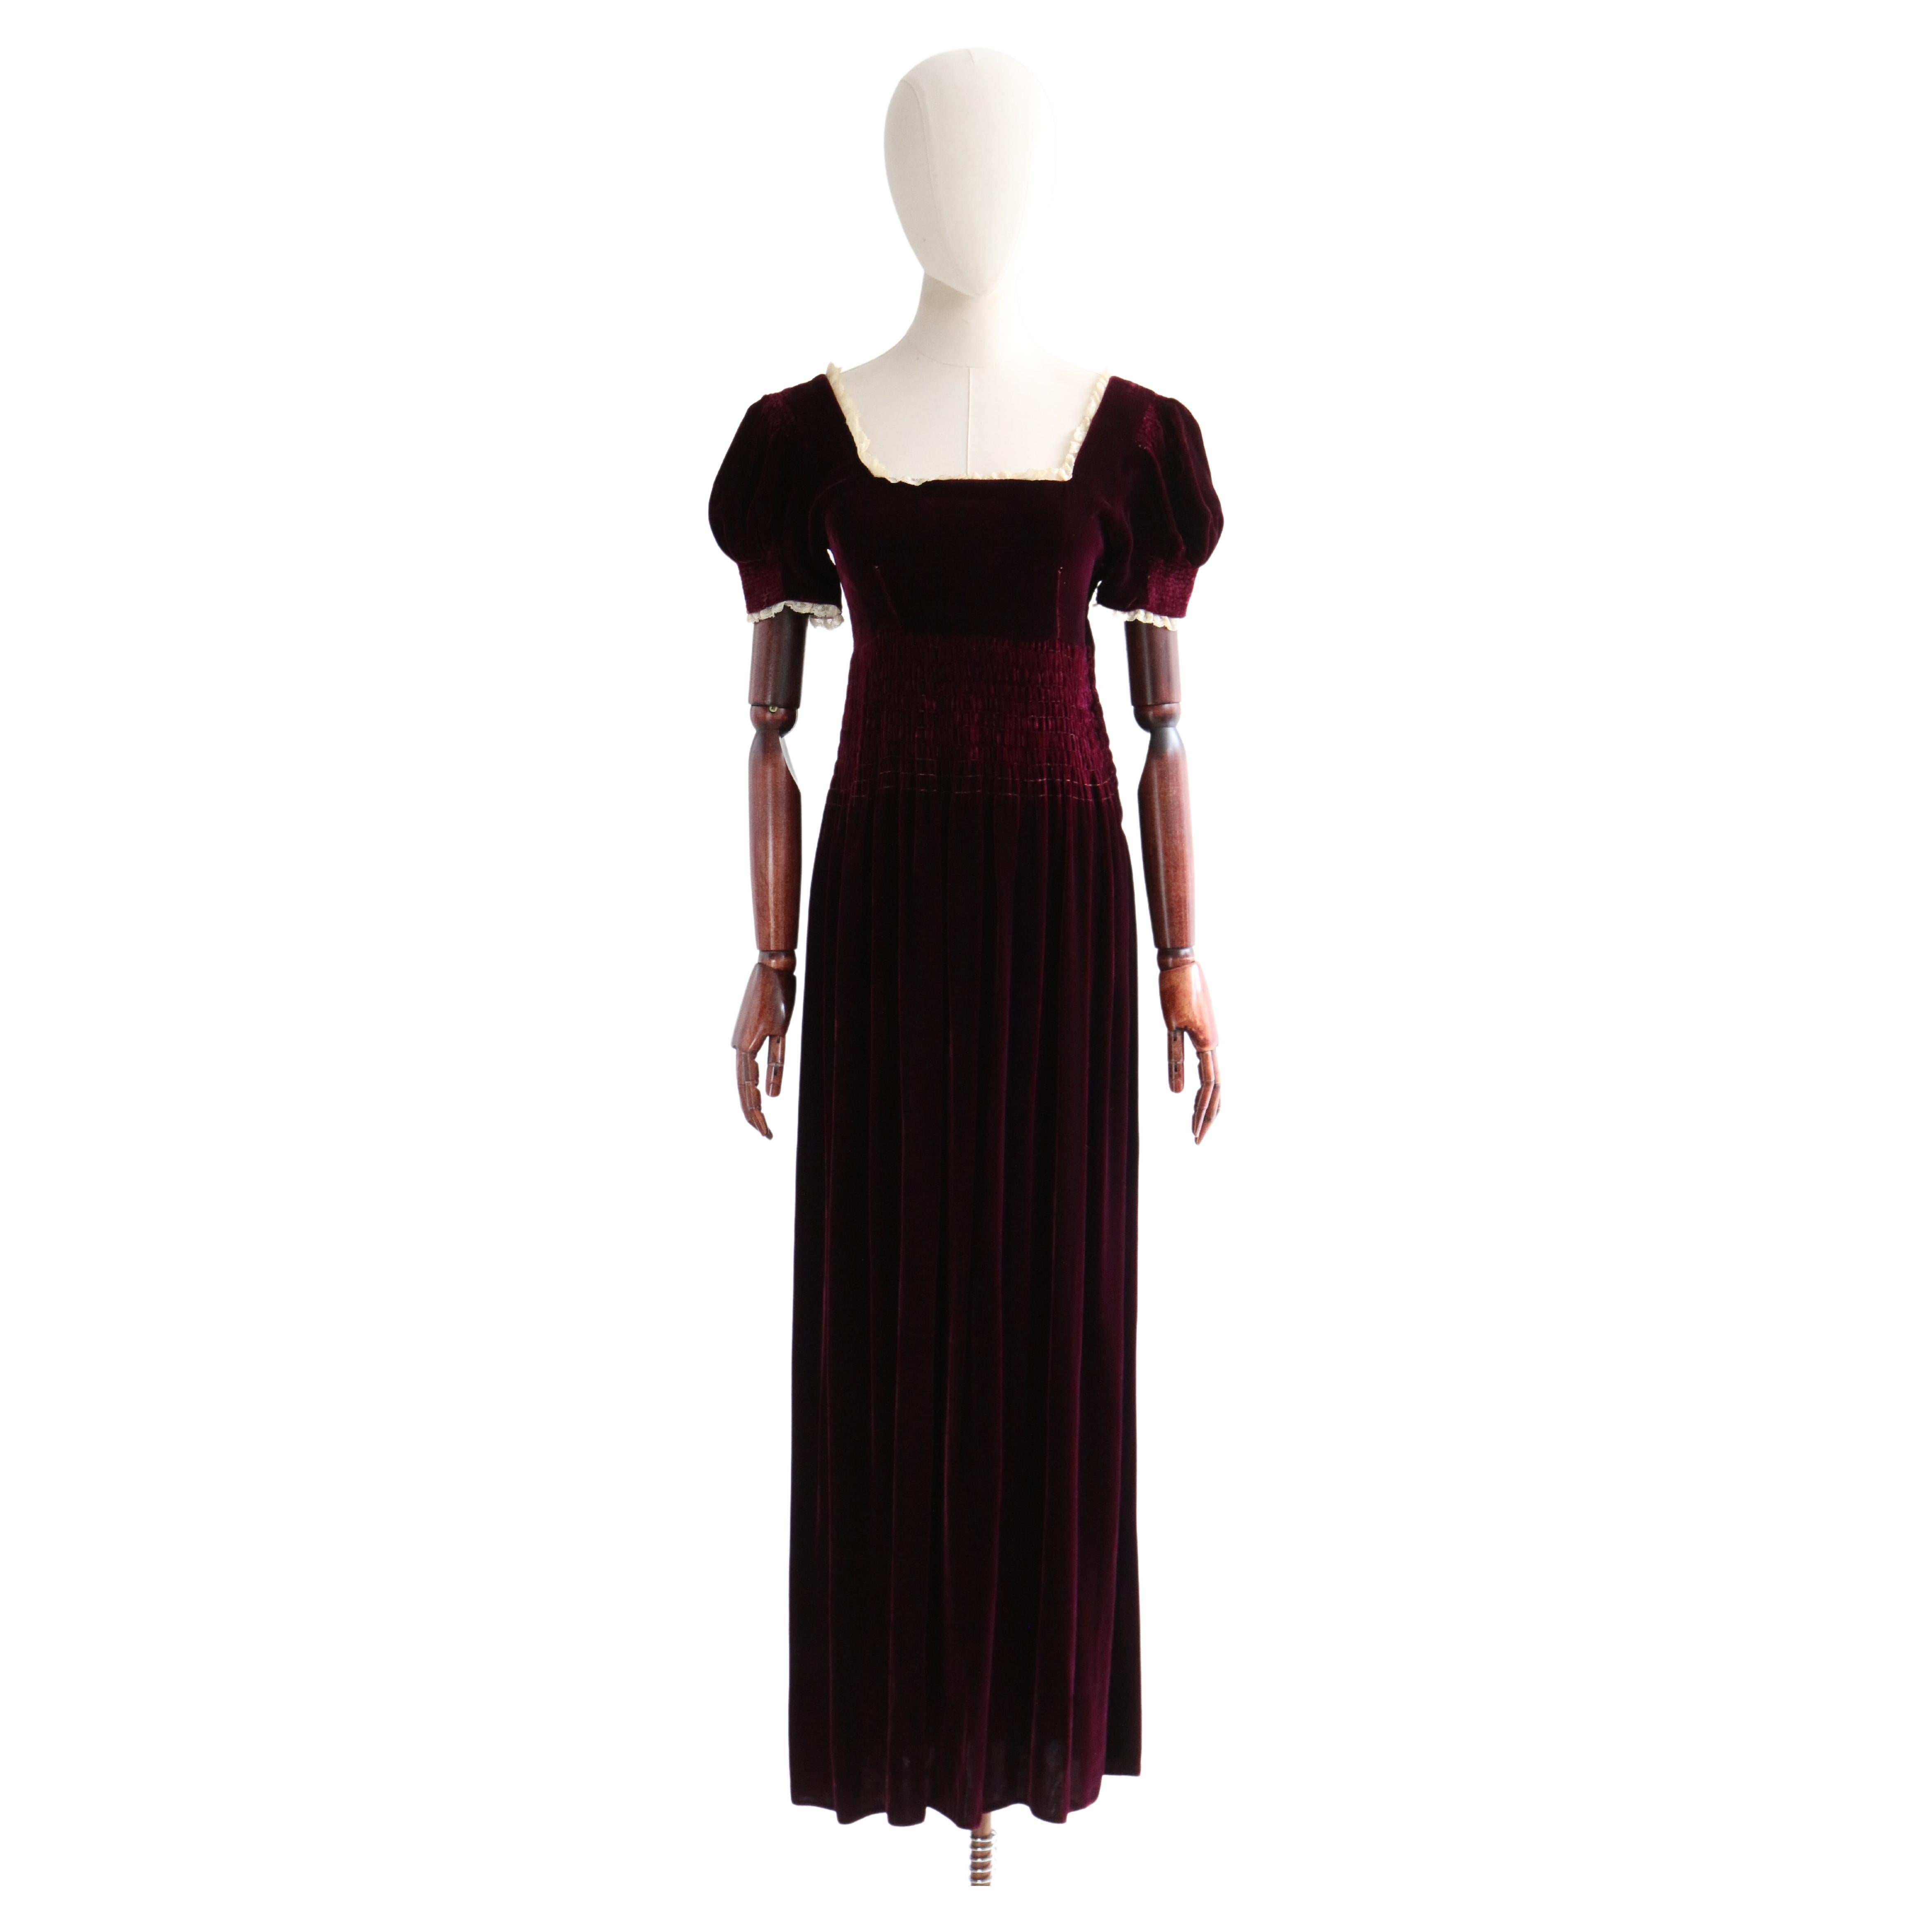 Vintage 1930's Burgundy Silk Velvet Dress UK 6-8 US 2-4